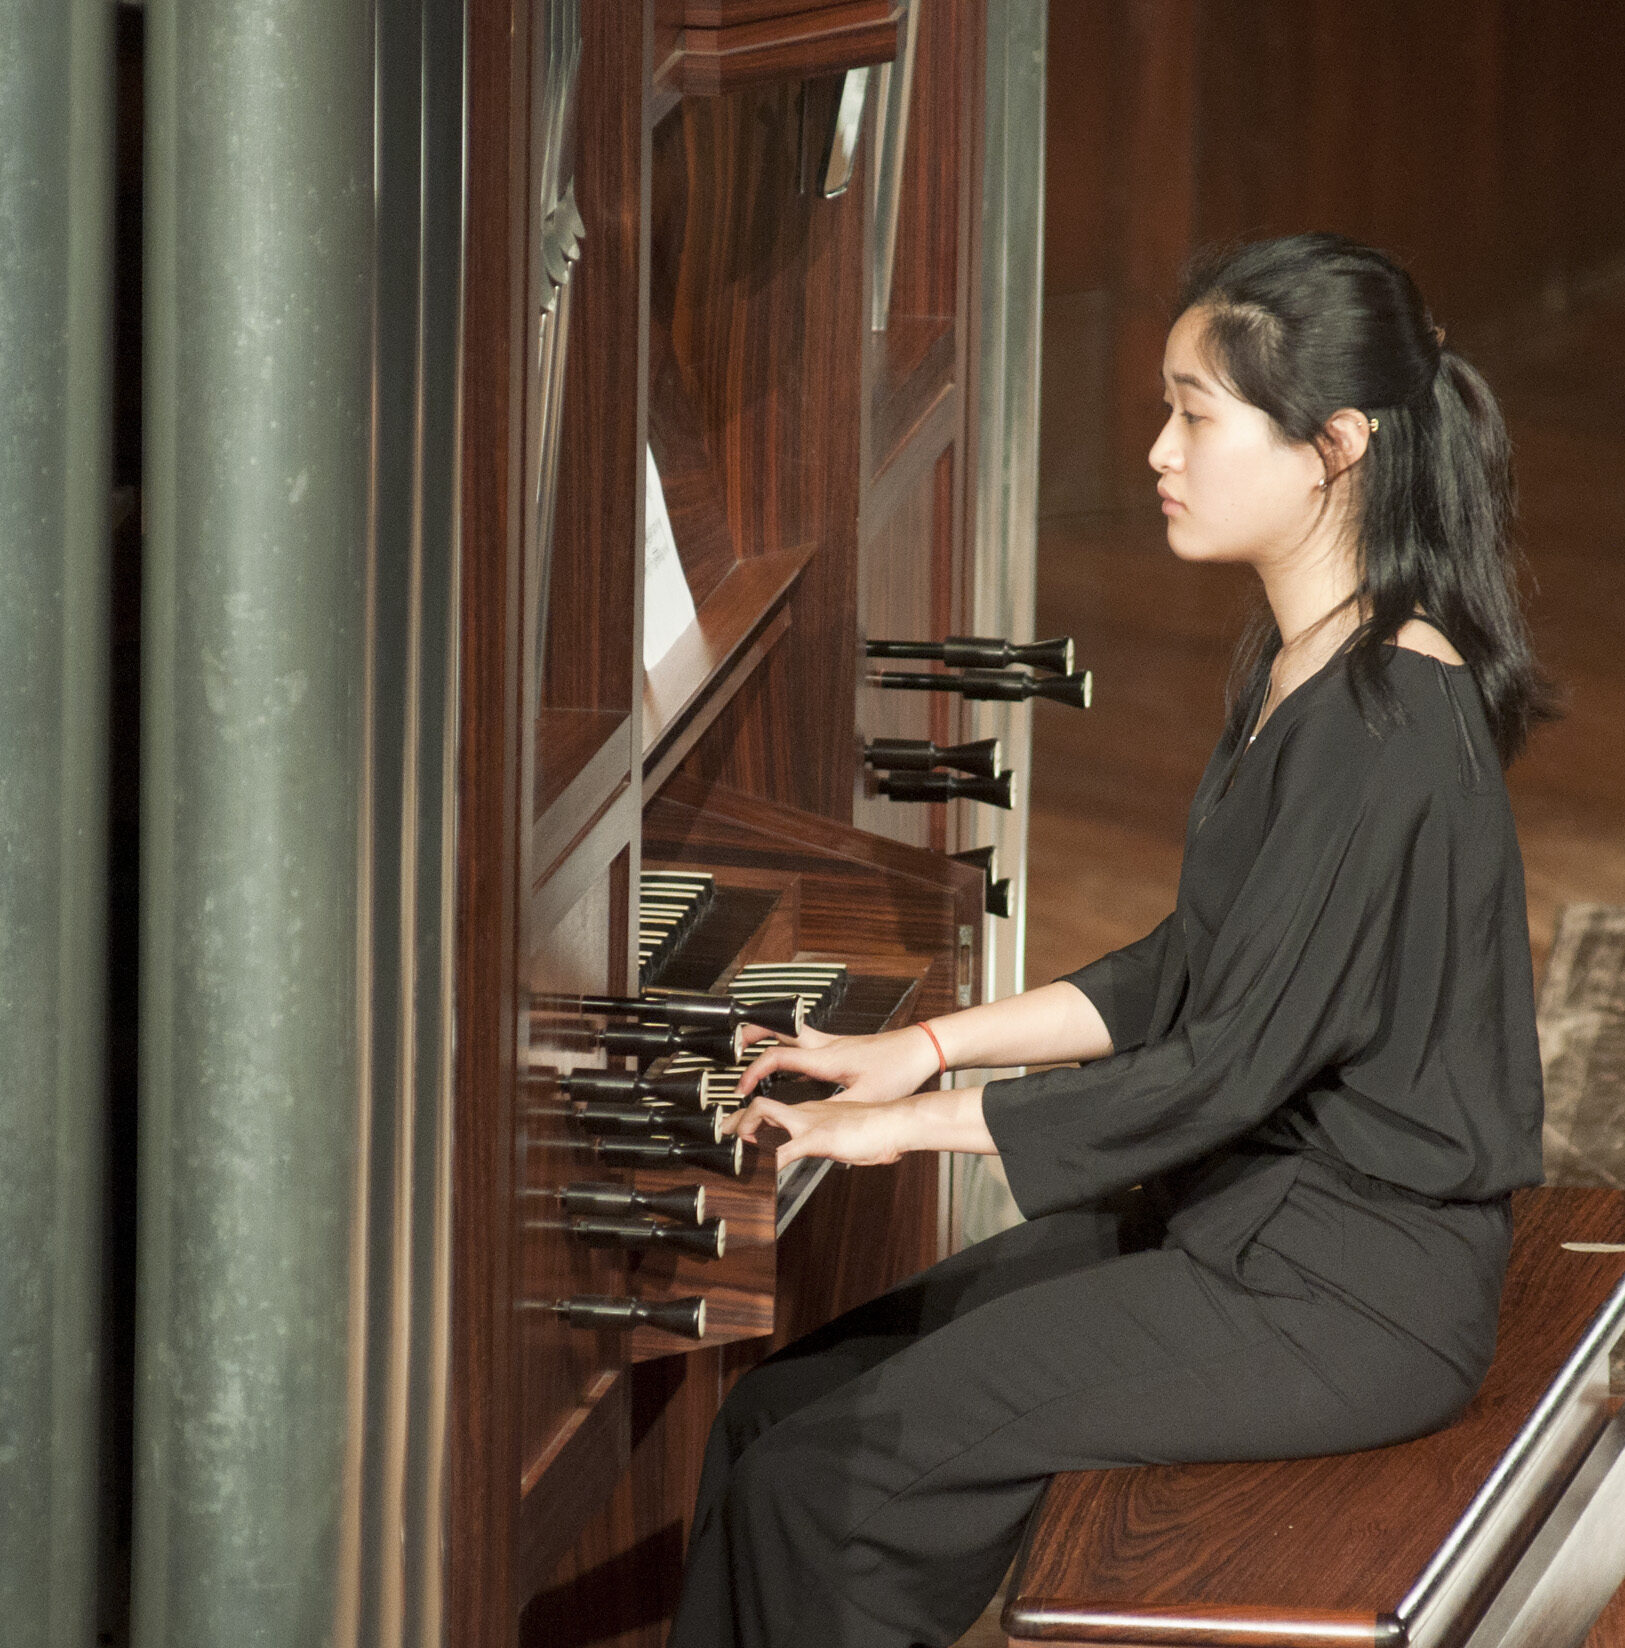 About Chapel Choir Tour India Tour Mumbai Concert Organ Scholar Melissa Chang